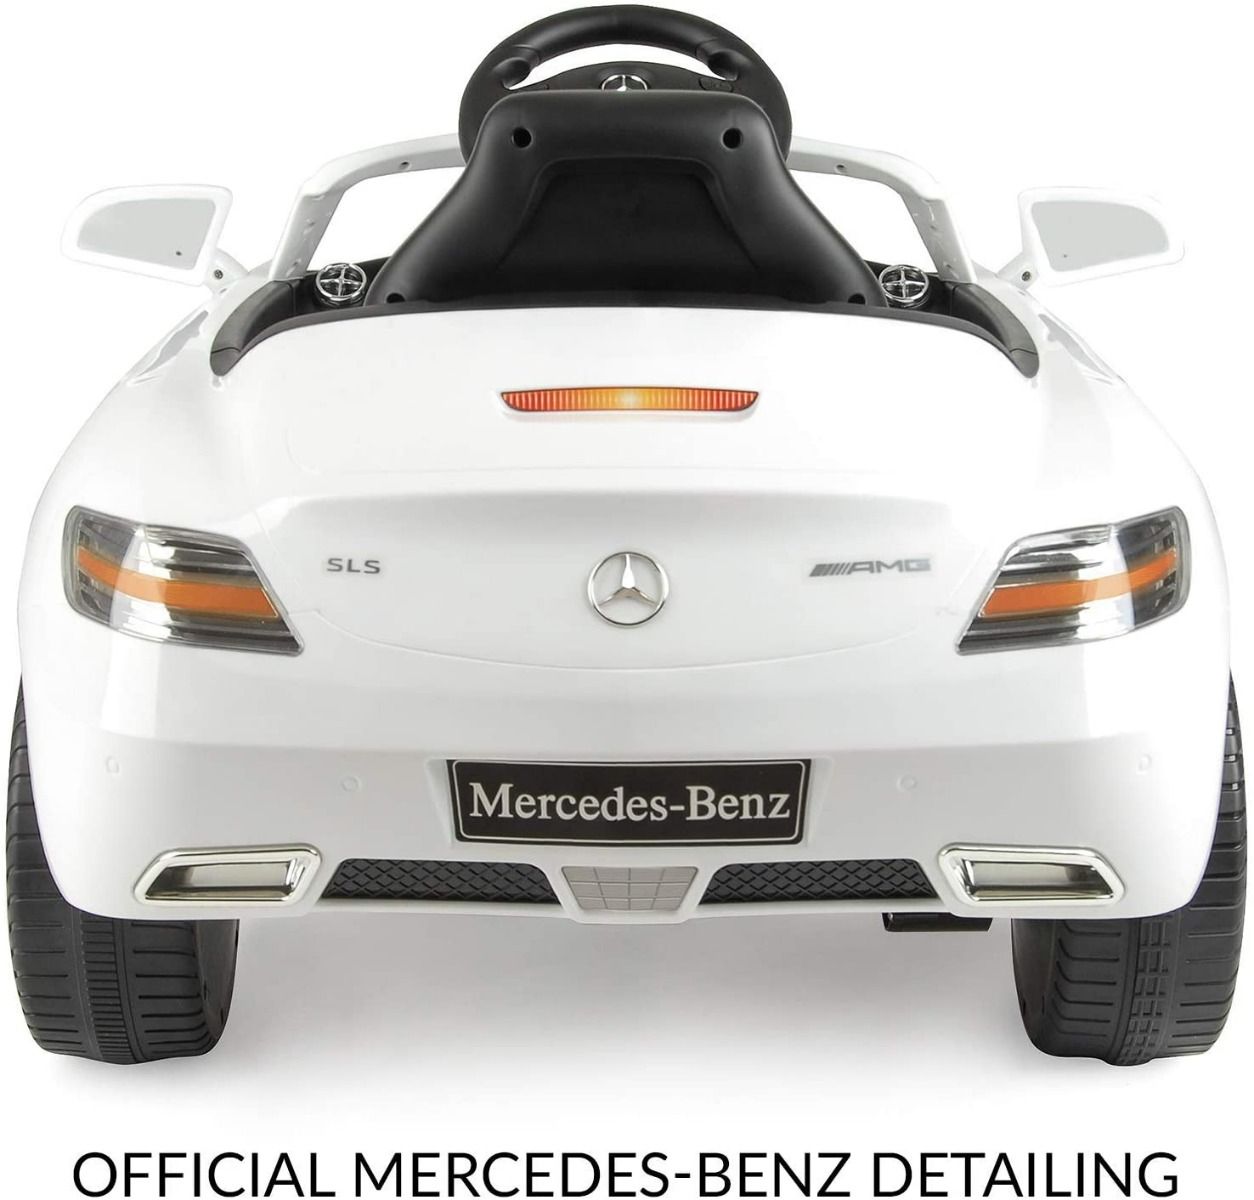 Megastar - Licensed Mercedes Benz Sls 6 V Electric Ride On Car For Children, White